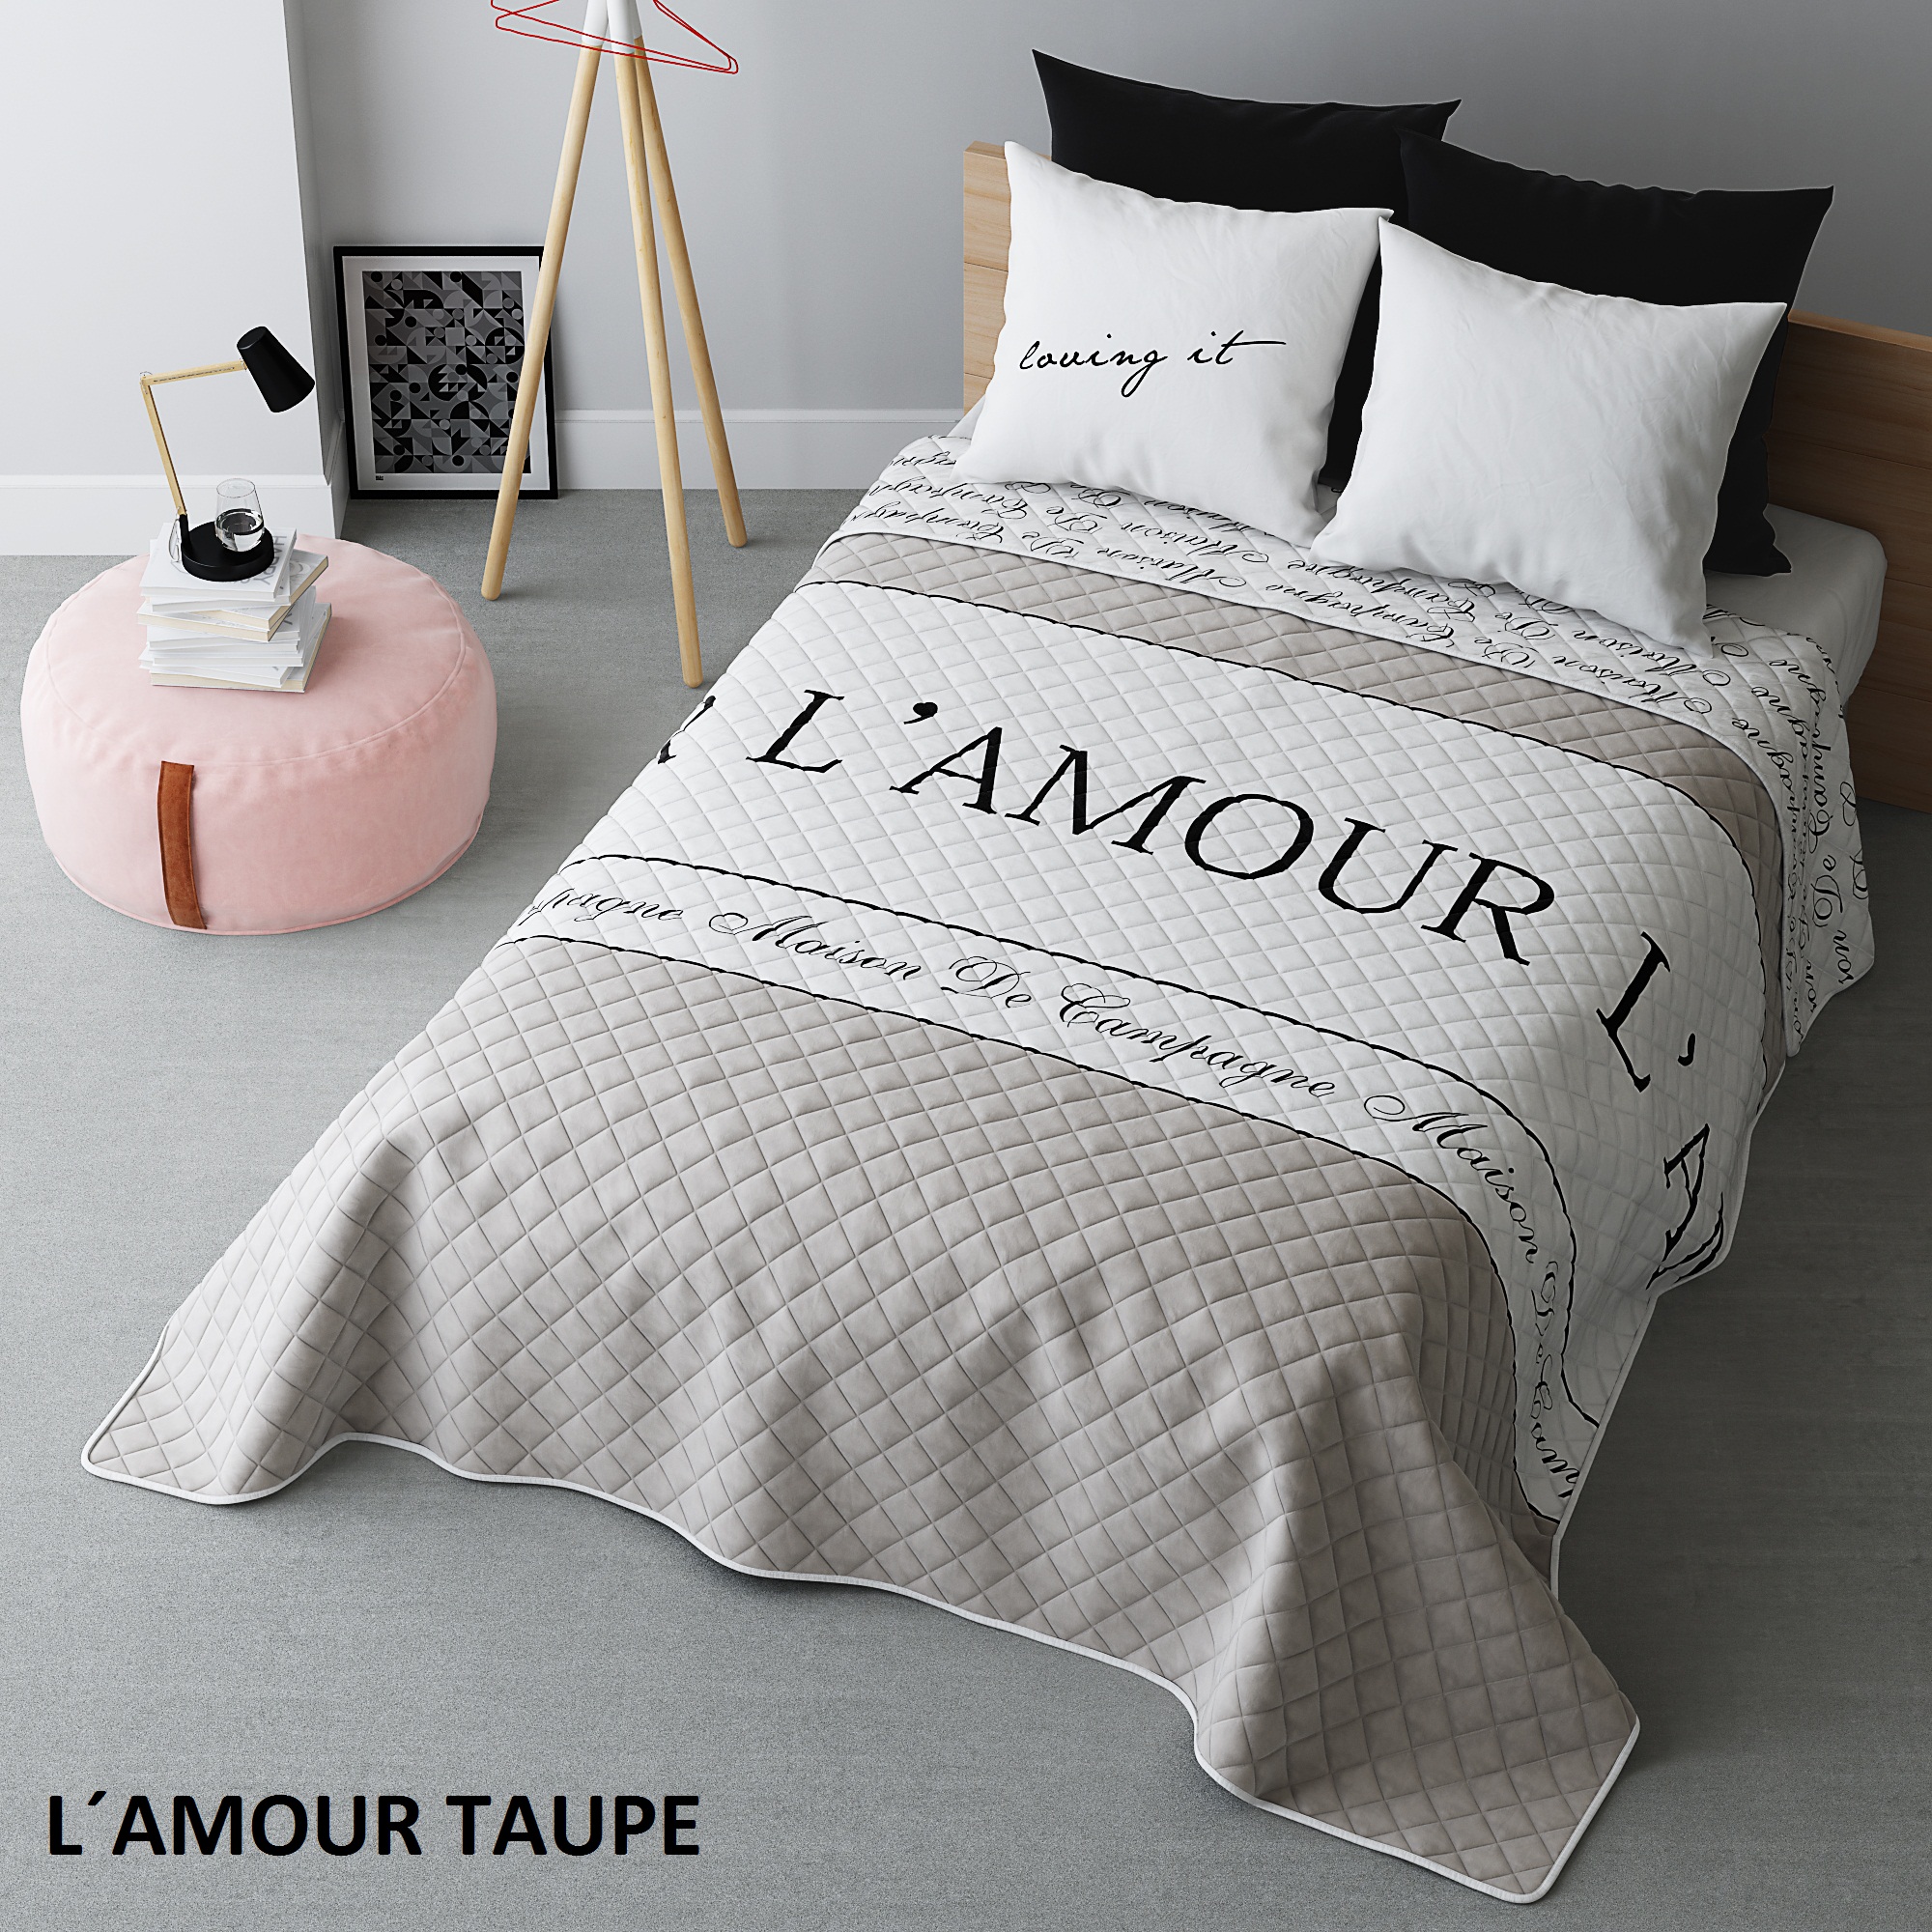 Francuska narzuta w kolorze beżowym na łóżko